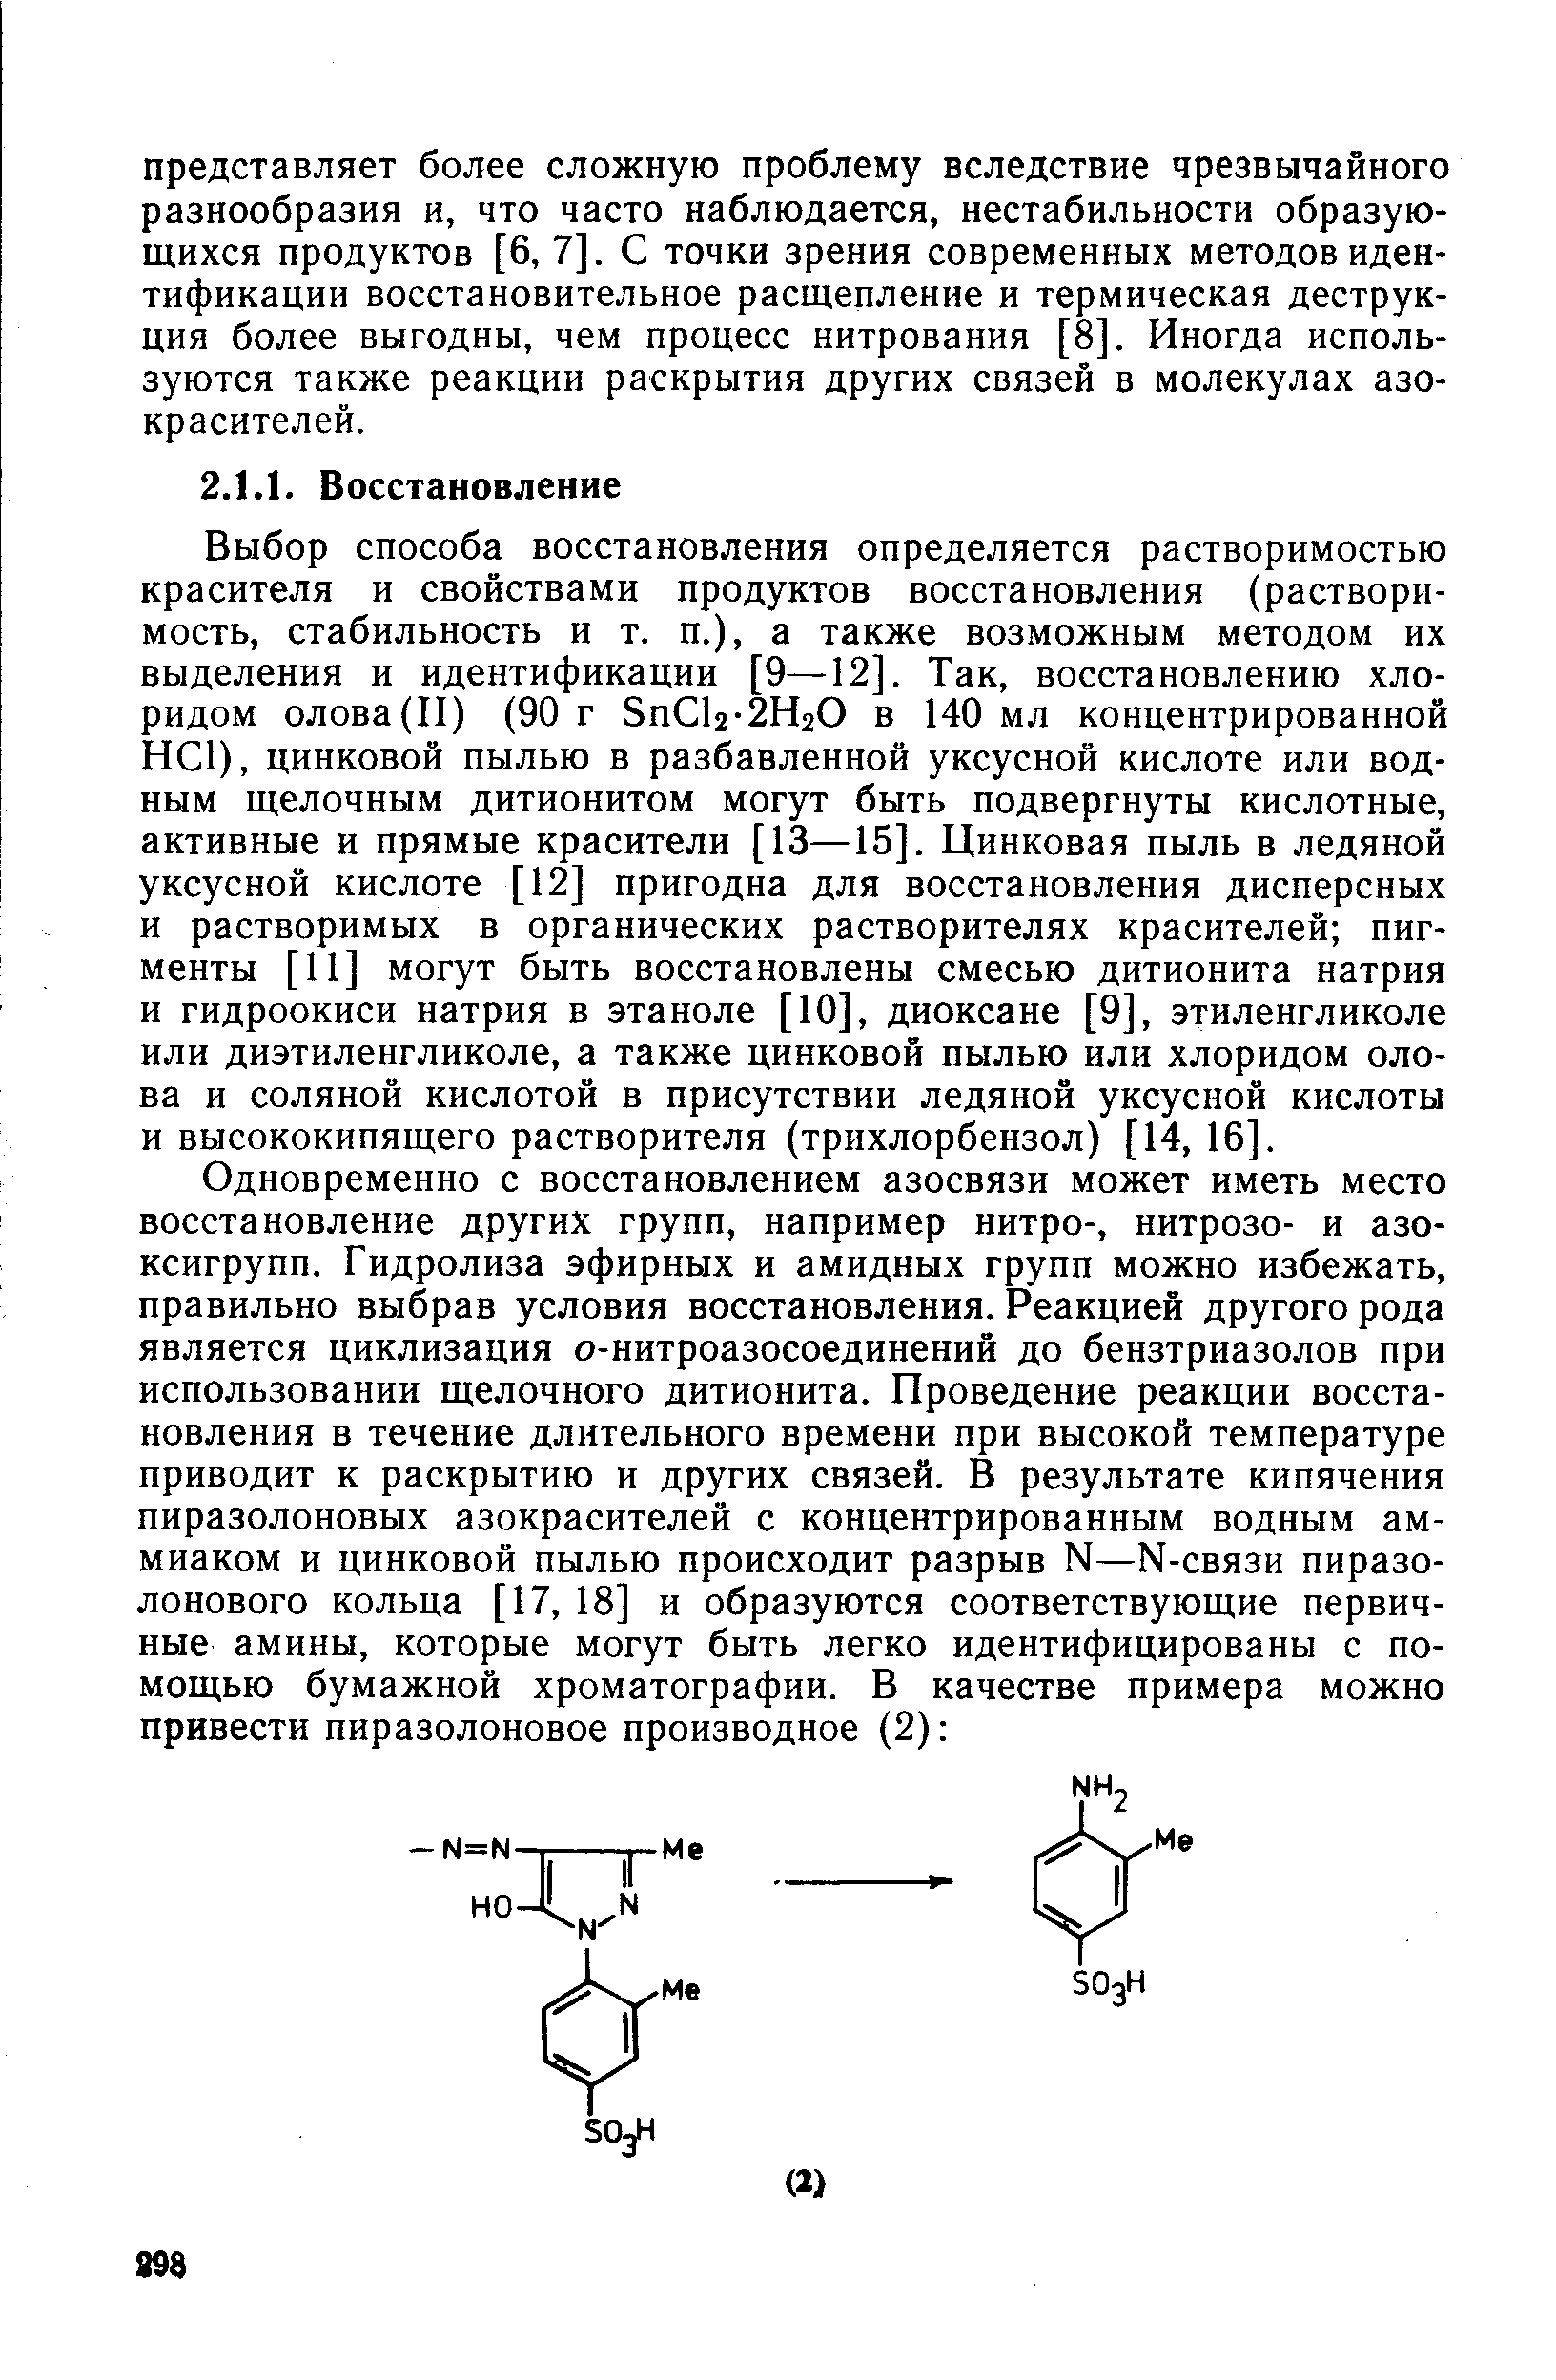 Выбор способа восстановления определяется растворимостью красителя и свойствами продуктов восстановления (растворимость, стабильность и т. п.), а также возможным методом их выделения и идентификации [9—12]. Так, восстановлению хлоридом олова(II) (90 г Sn l2-2H20 в 140 мл концентрированной НС1), цинковой пылью в разбавленной уксусной кислоте или водным щелочным дитионитом могут быть подвергнуты кислотные, активные и прямые красители [13—15]. Цинковая пыль в ледяной уксусной кислоте [12] пригодна для восстановления дисперсных и растворимых в органических растворителях красителей пигменты [11] могут быть восстановлены смесью дитионита натрия и гидроокиси натрия в этаноле [10], диоксане [9], этиленгликоле или диэтиленгликоле, а также цинковой пылью или хлоридом олова и соляной кислотой в присутствии ледяной уксусной кислоты и высококипящего растворителя (трихлорбензол) [14, 16].